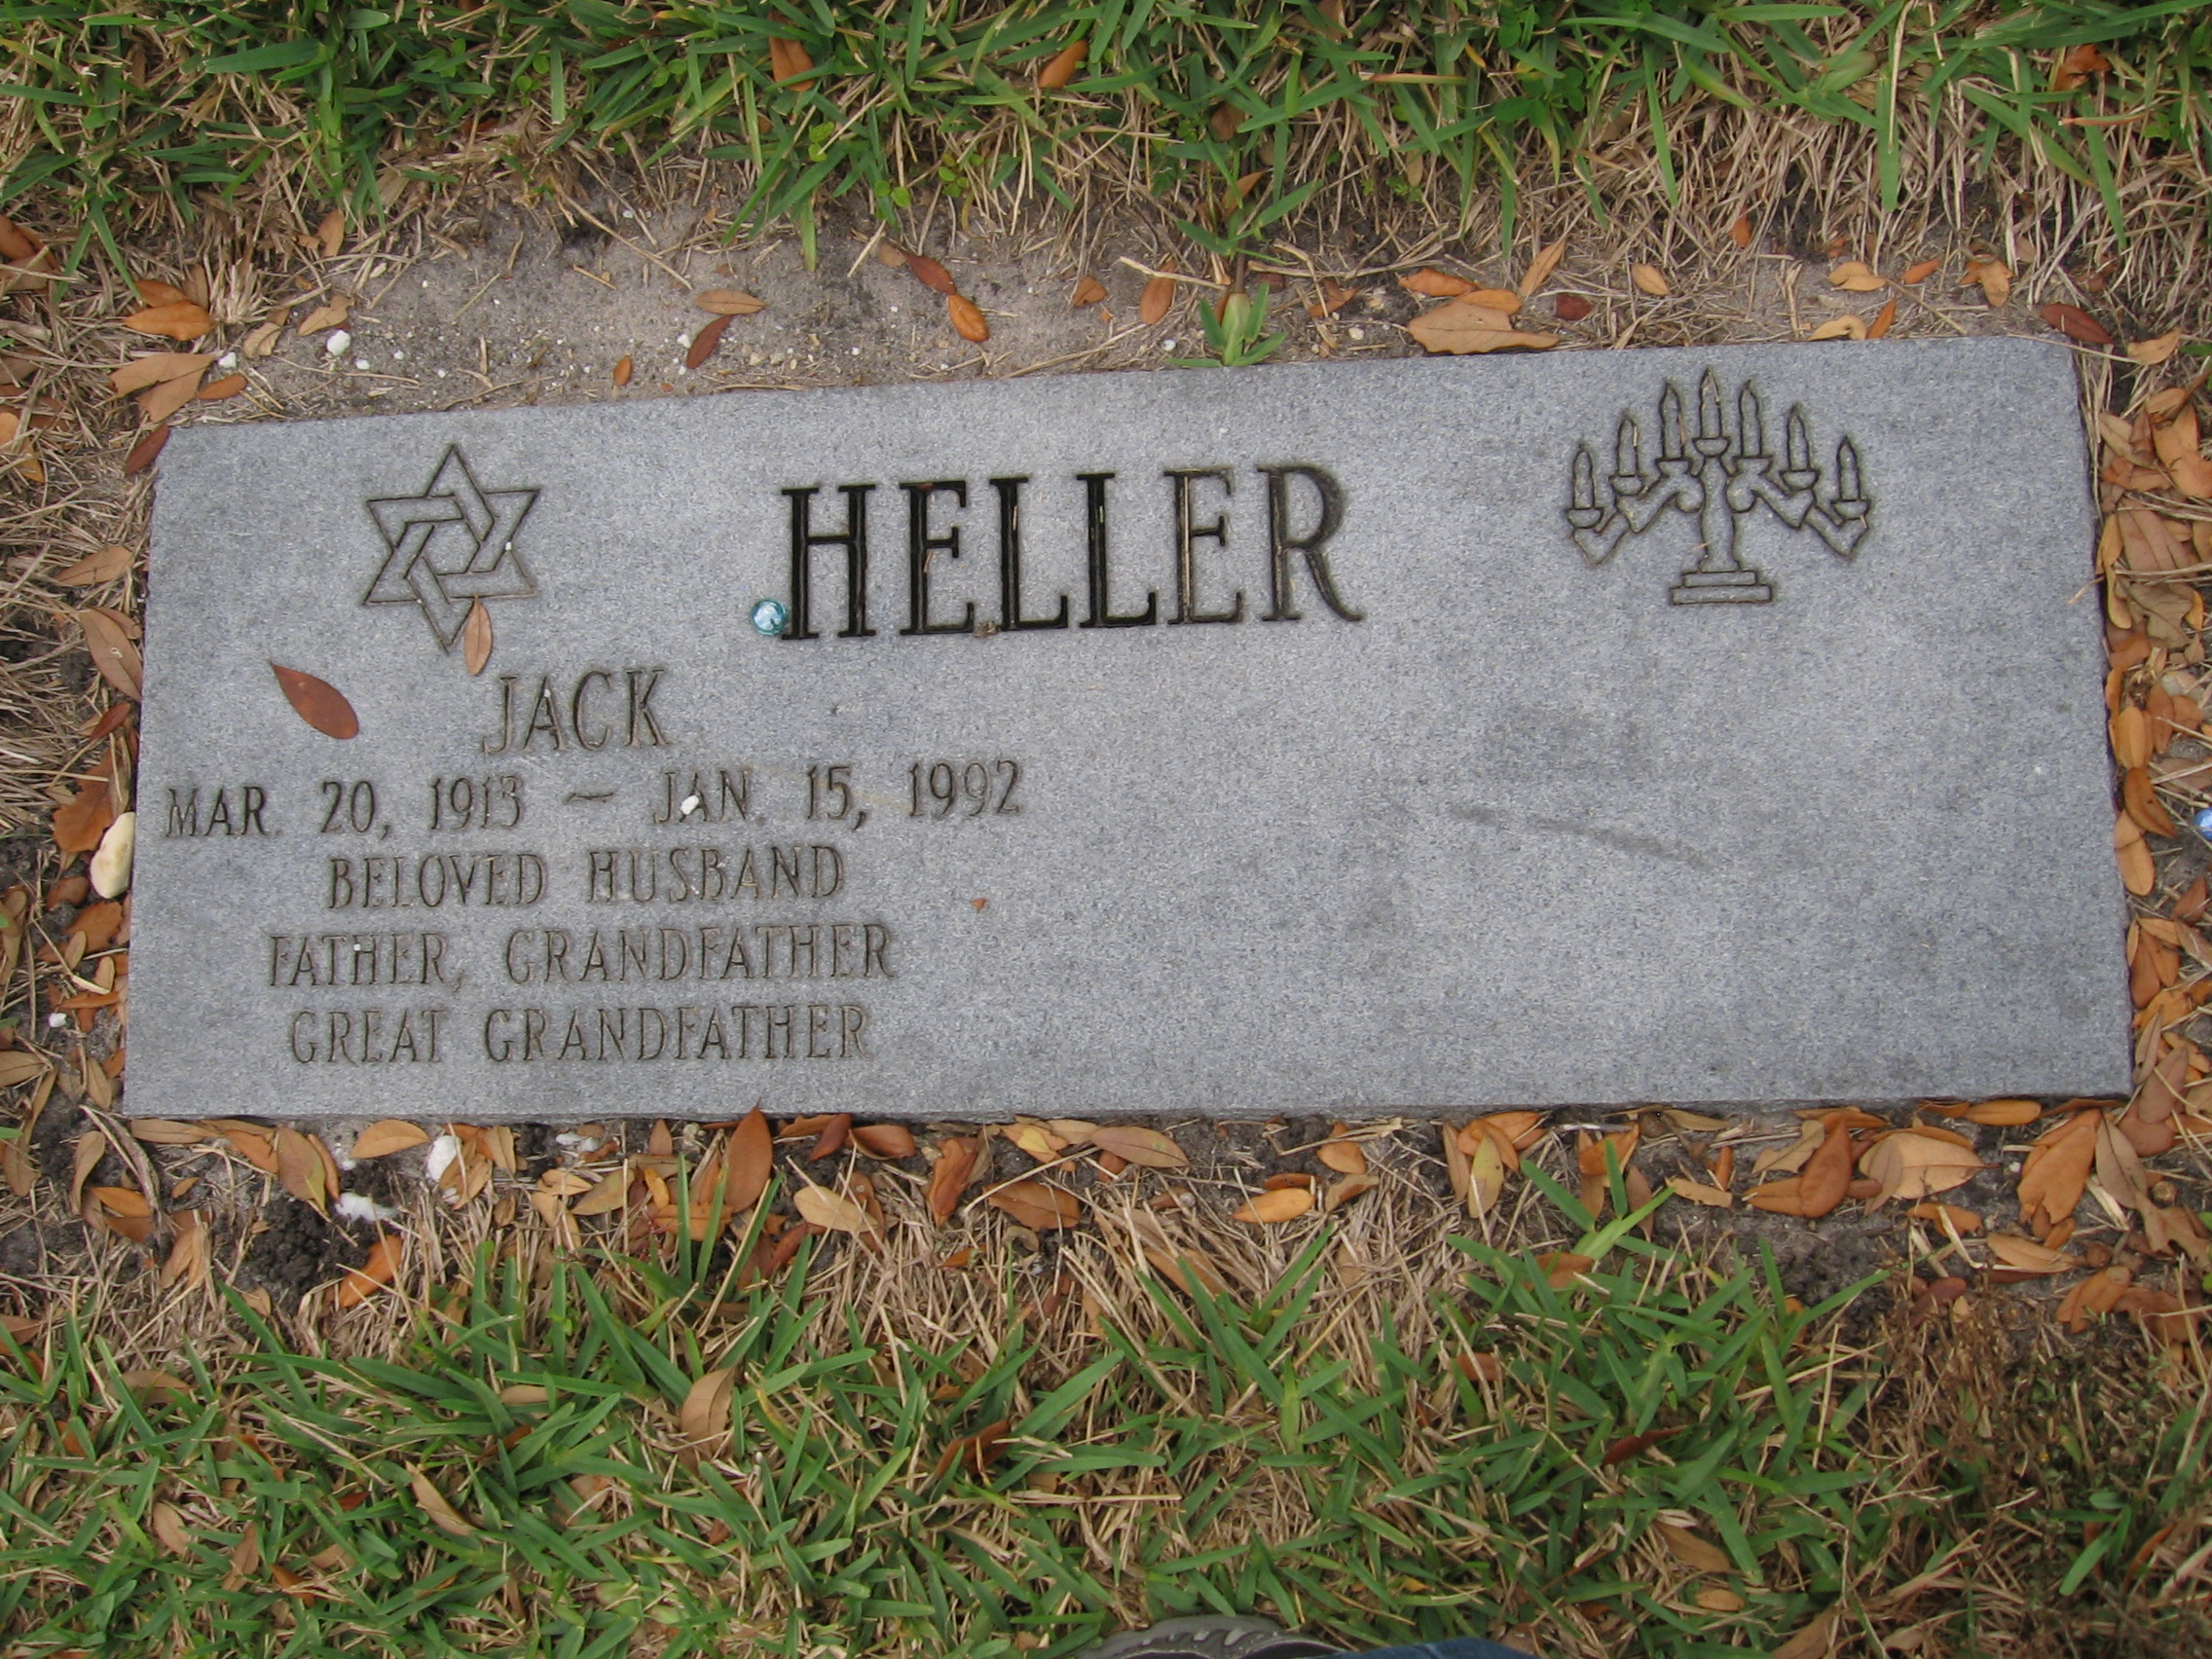 Jack Heller